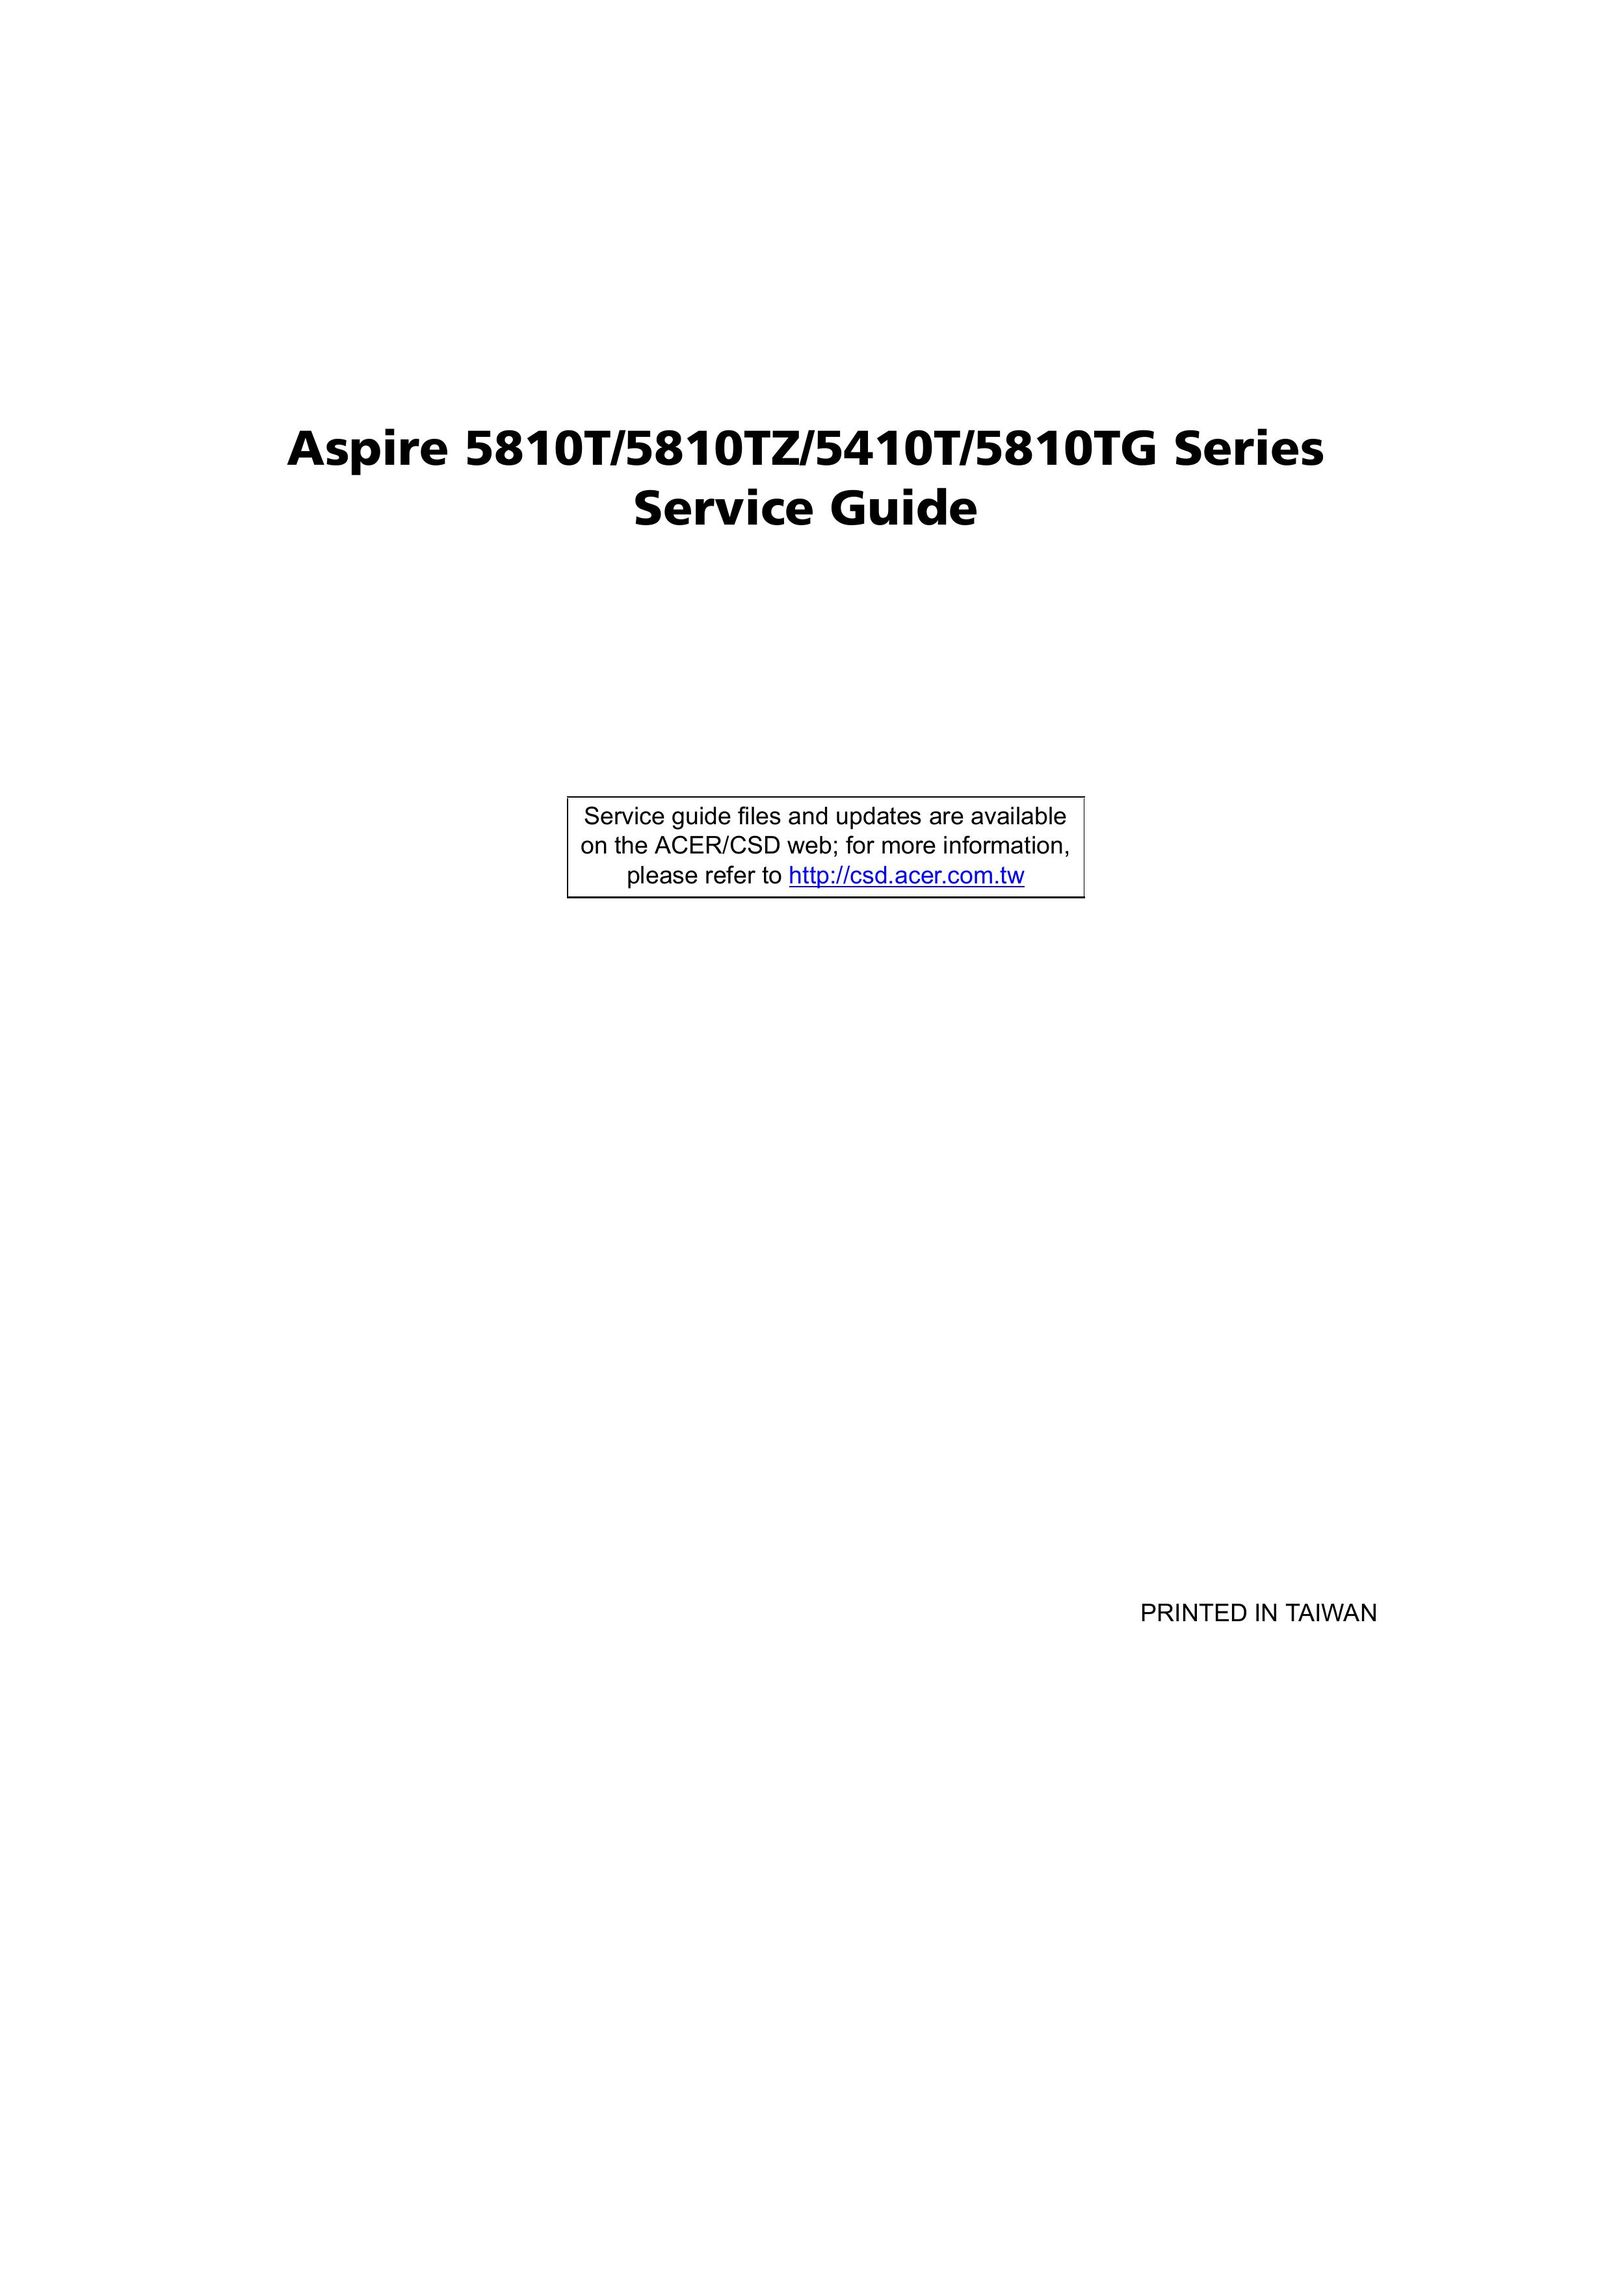 Aspire Digital 5810TZ Laptop User Manual